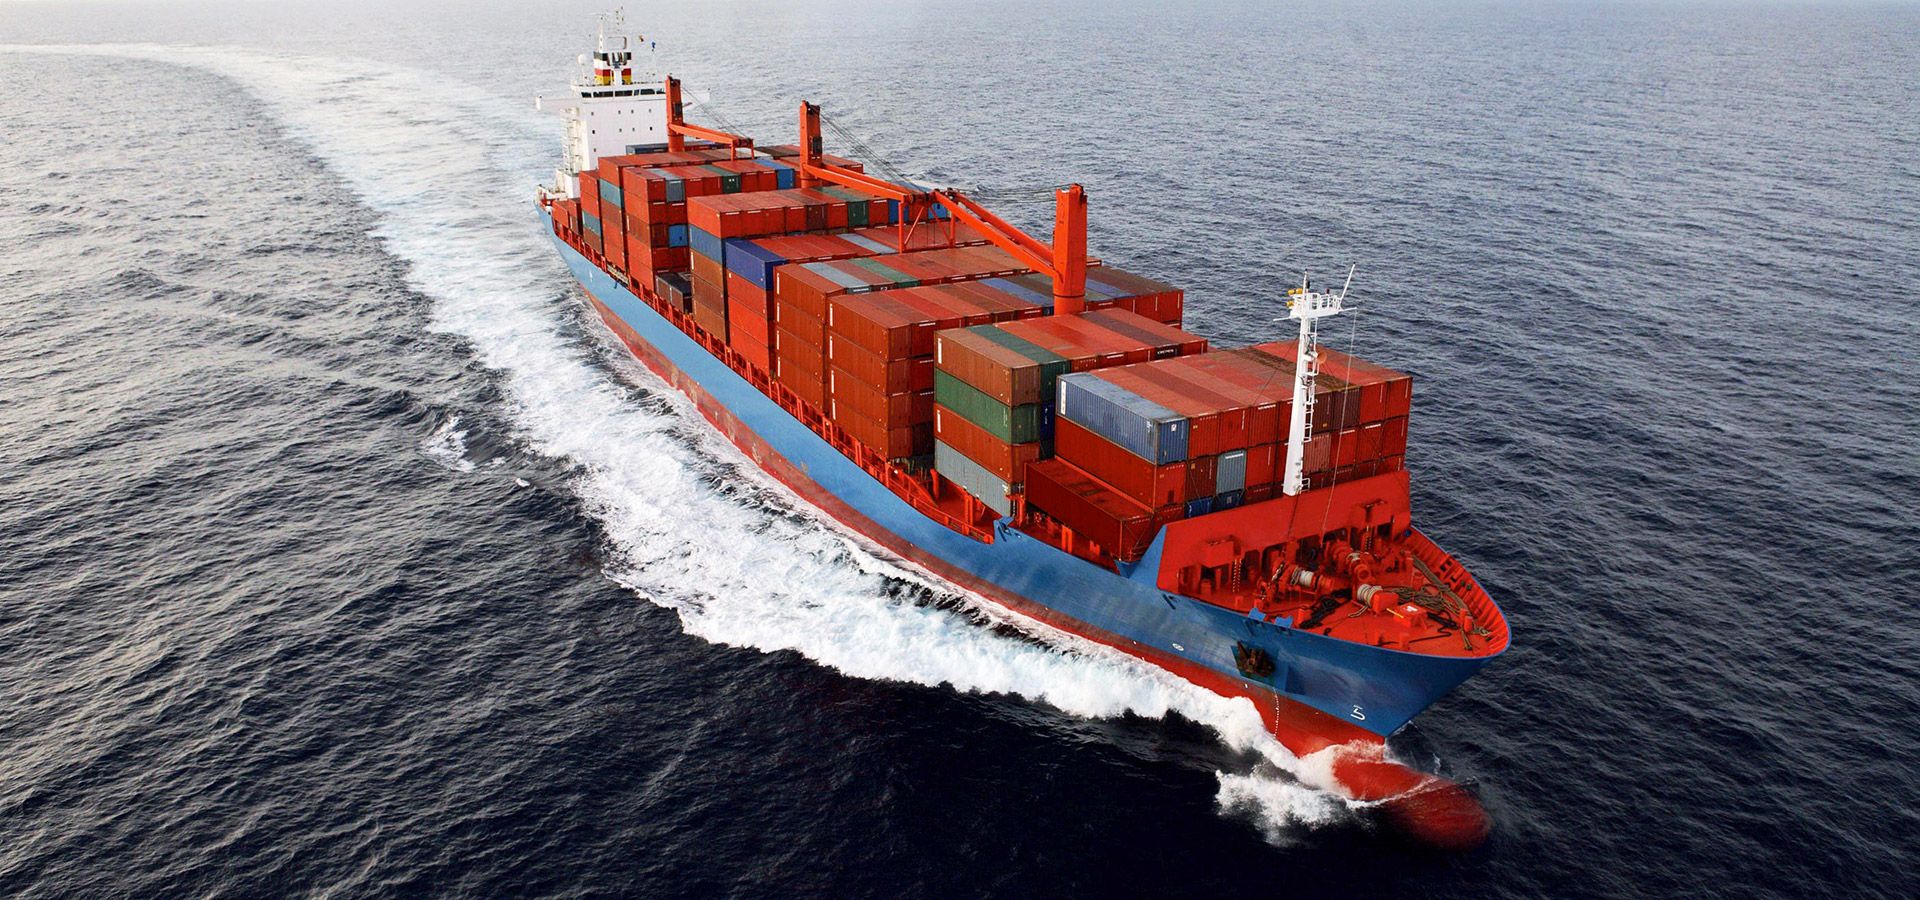 FDTrans cung cấp các dịch vụ vận tải đường biển với mức giá cạnh tranh, đúng lịch trình, đáp ứng đầy đủ nhu cầu vận chuyển hàng hóa đến các cảng trên thế giới.